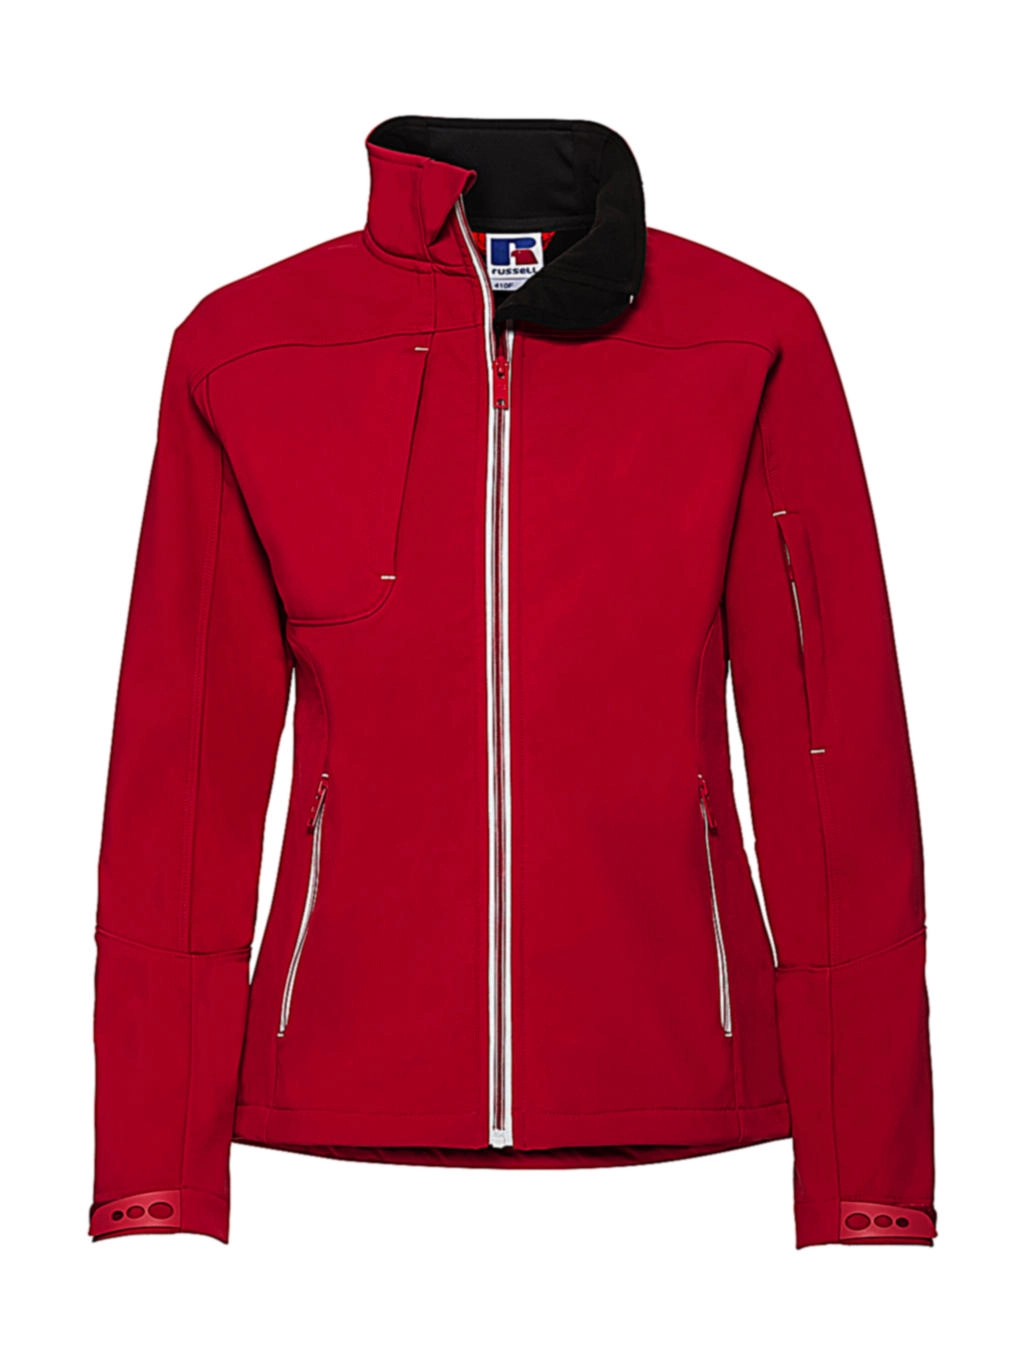 Ladies` Bionic Softshell Jacket zum Besticken und Bedrucken in der Farbe Classic Red mit Ihren Logo, Schriftzug oder Motiv.